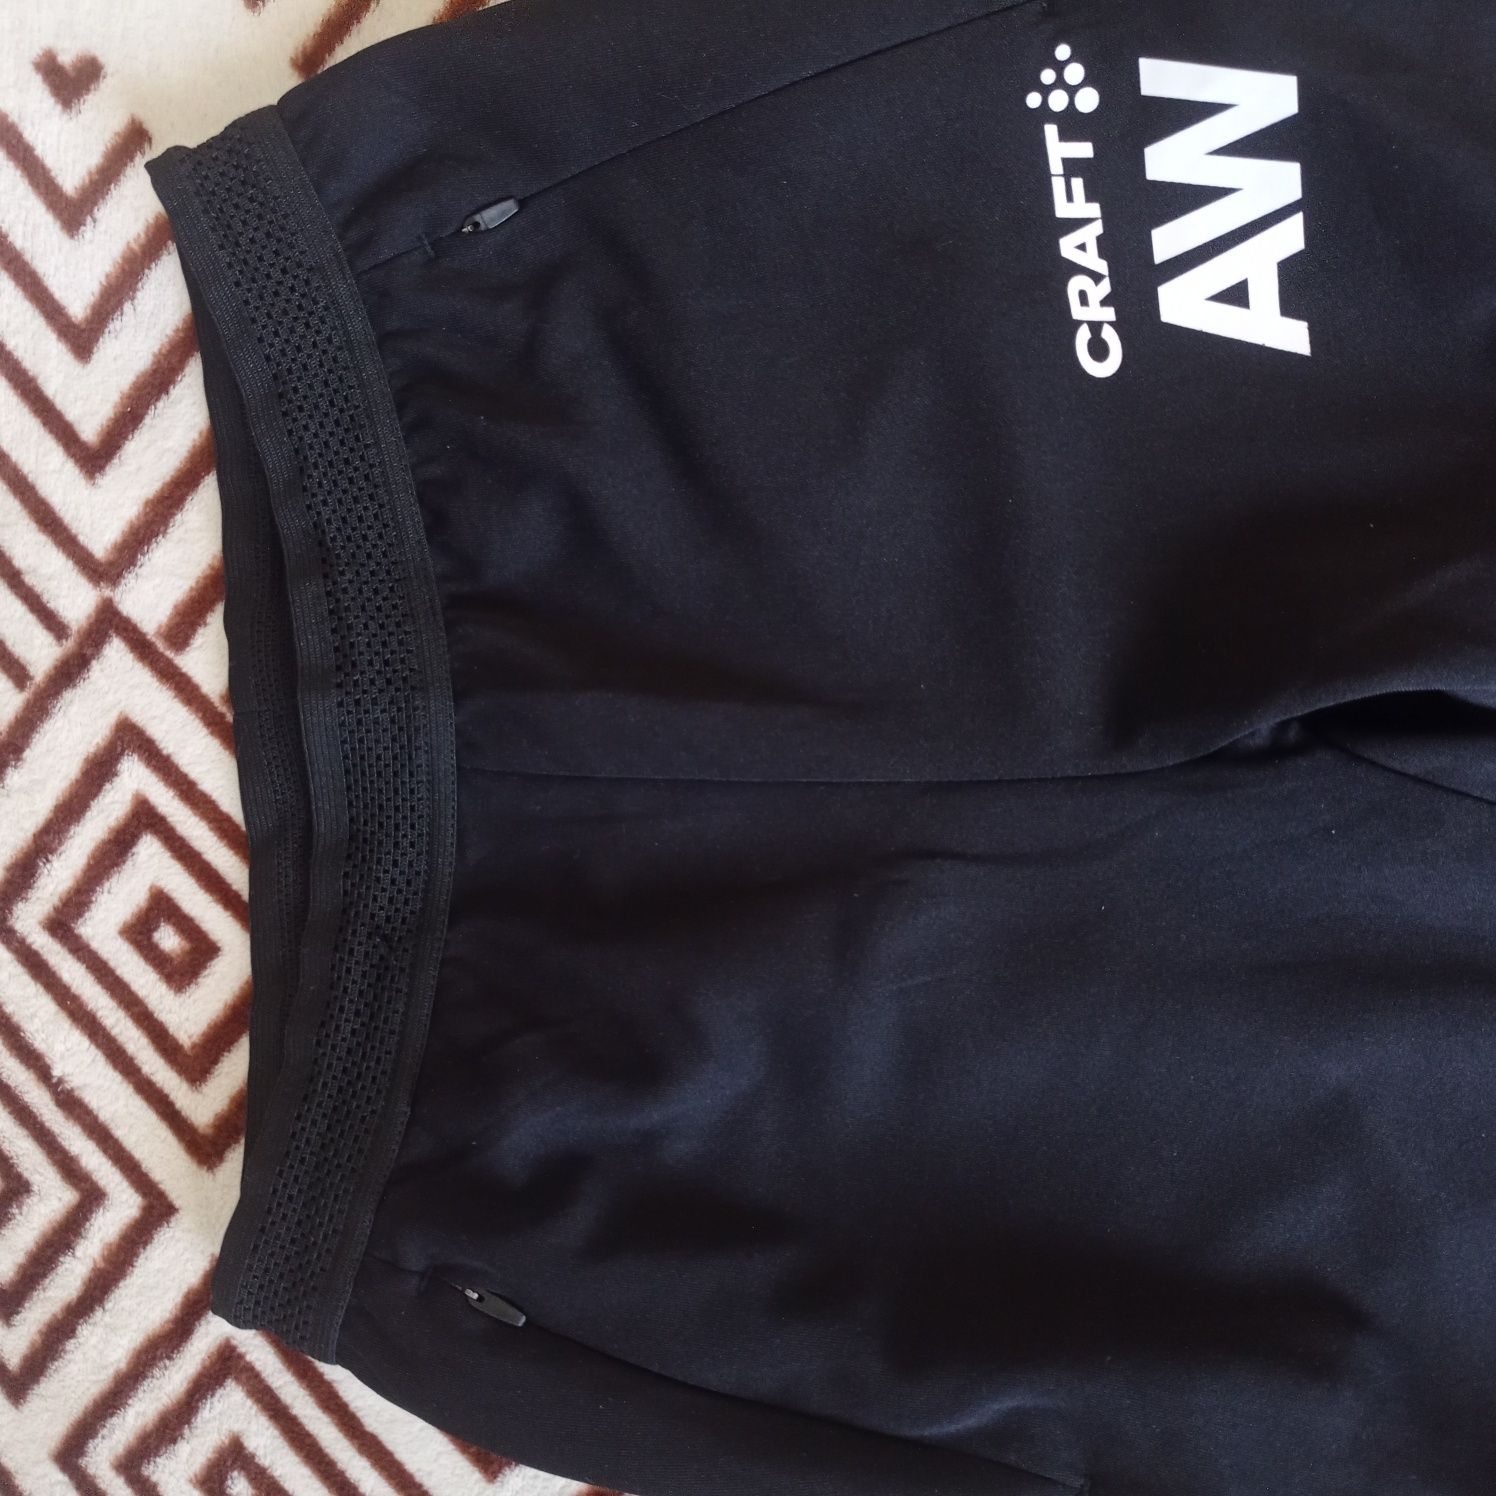 Спортивные штаны лосины Craft AW леггинсы для тренировок